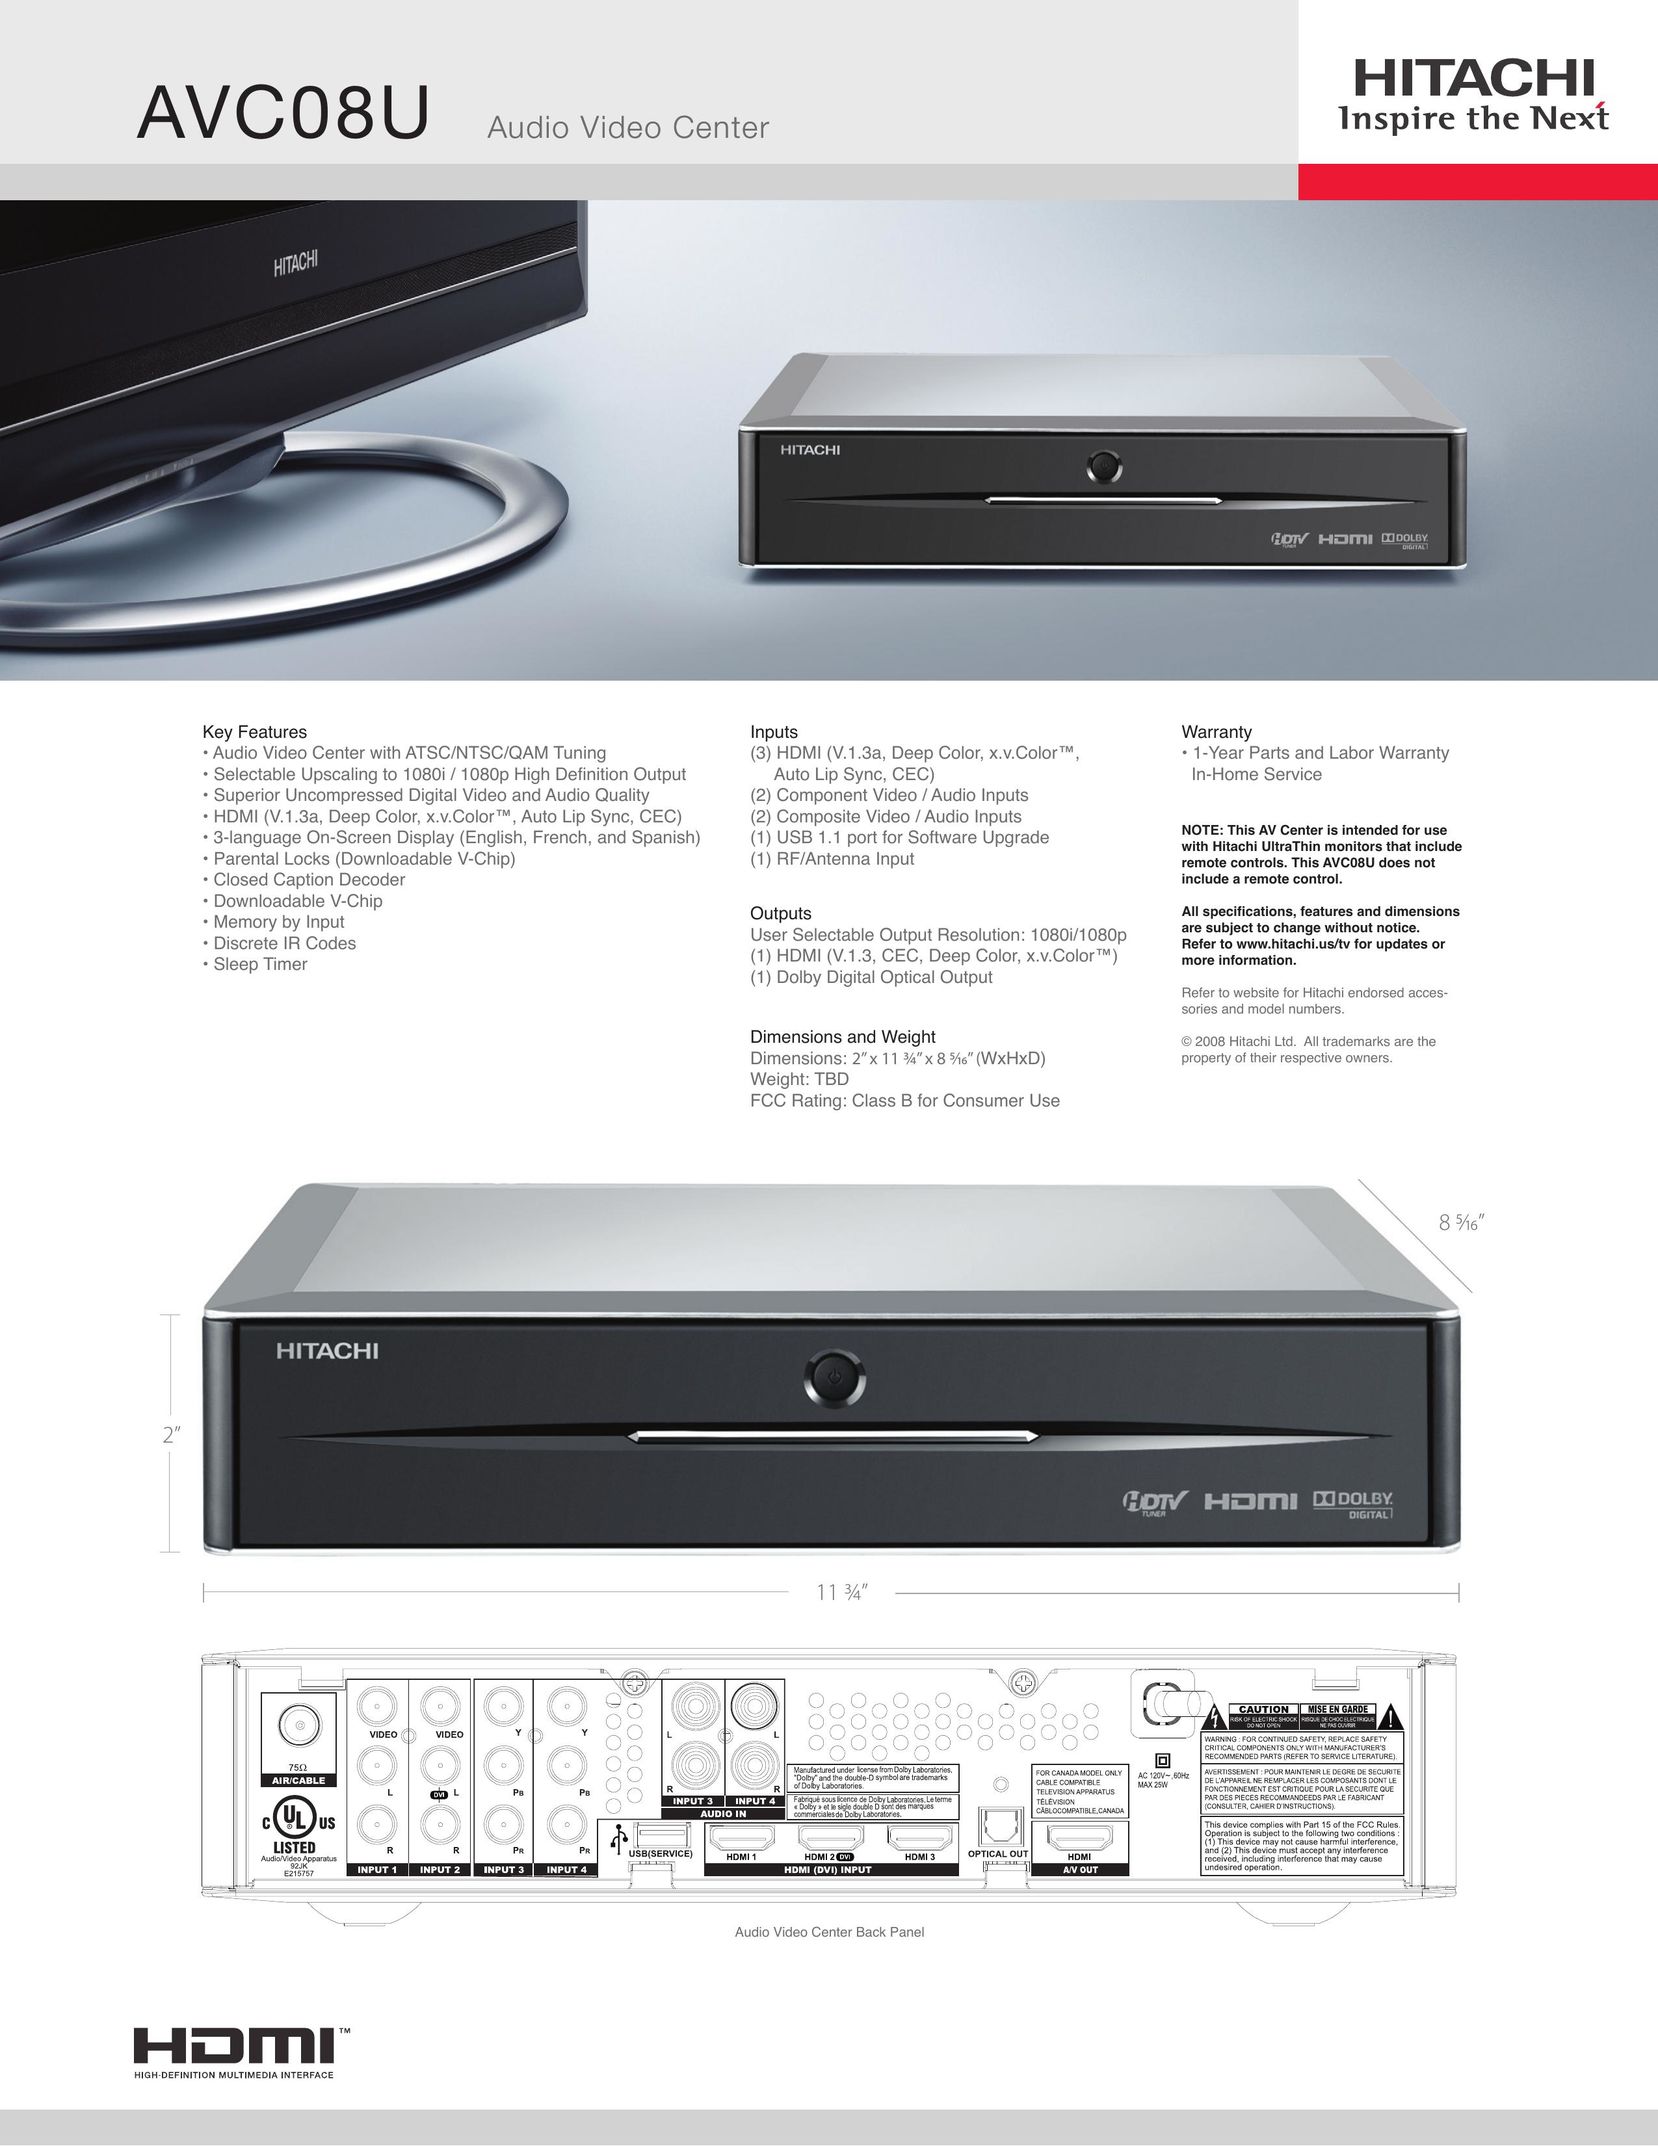 Hitachi AVC08U TV Receiver User Manual